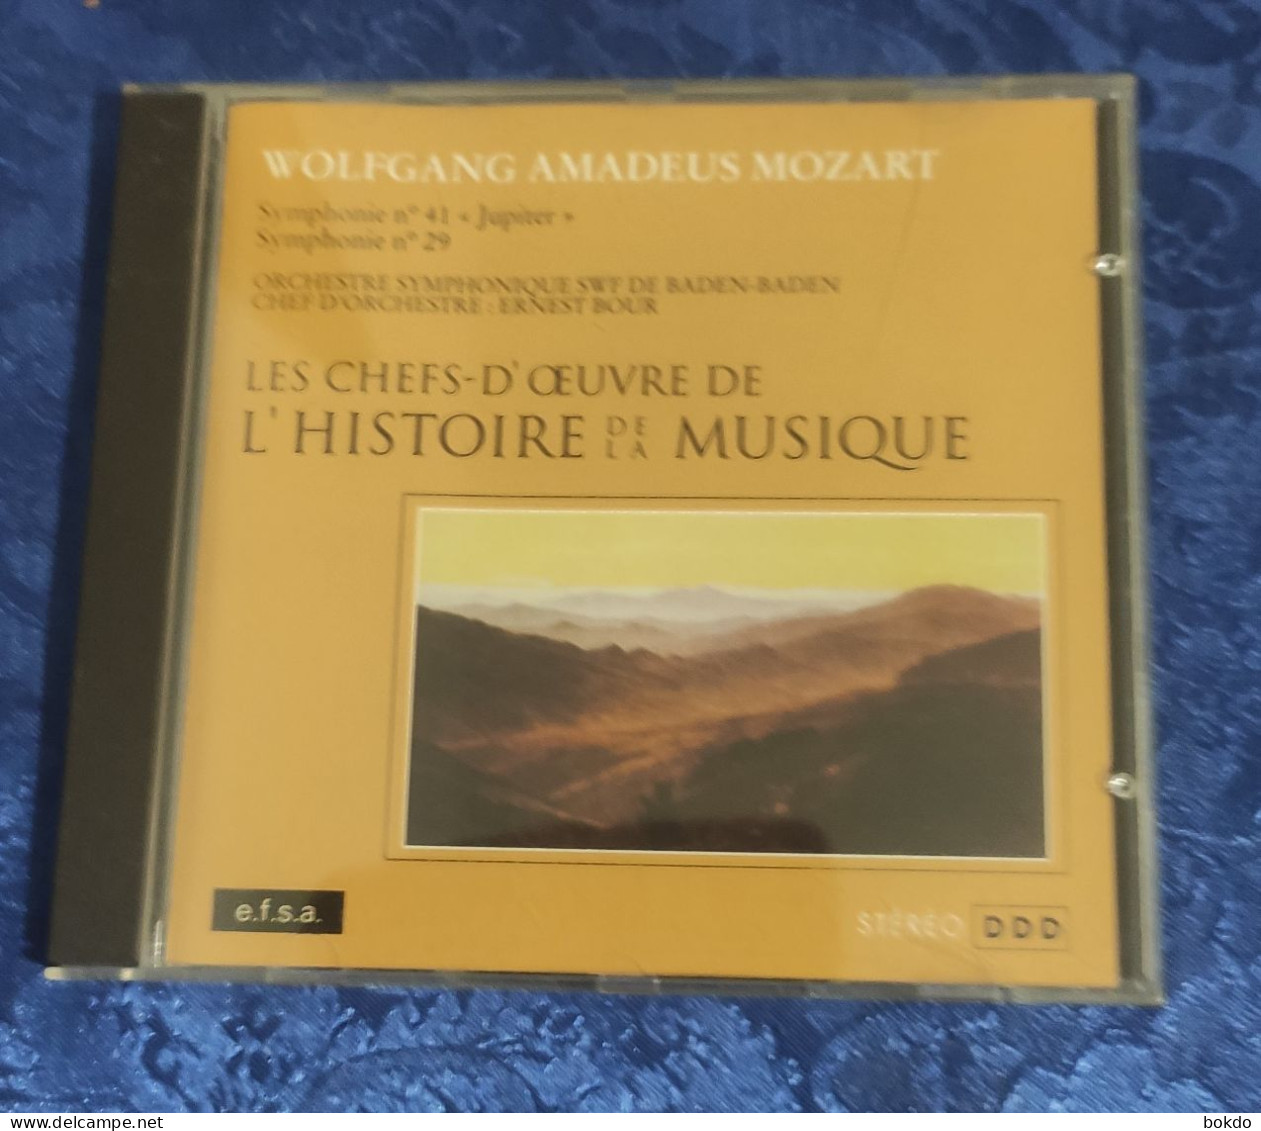 Mozart - Symphonie N° 41 Et N° 29 - Klassik